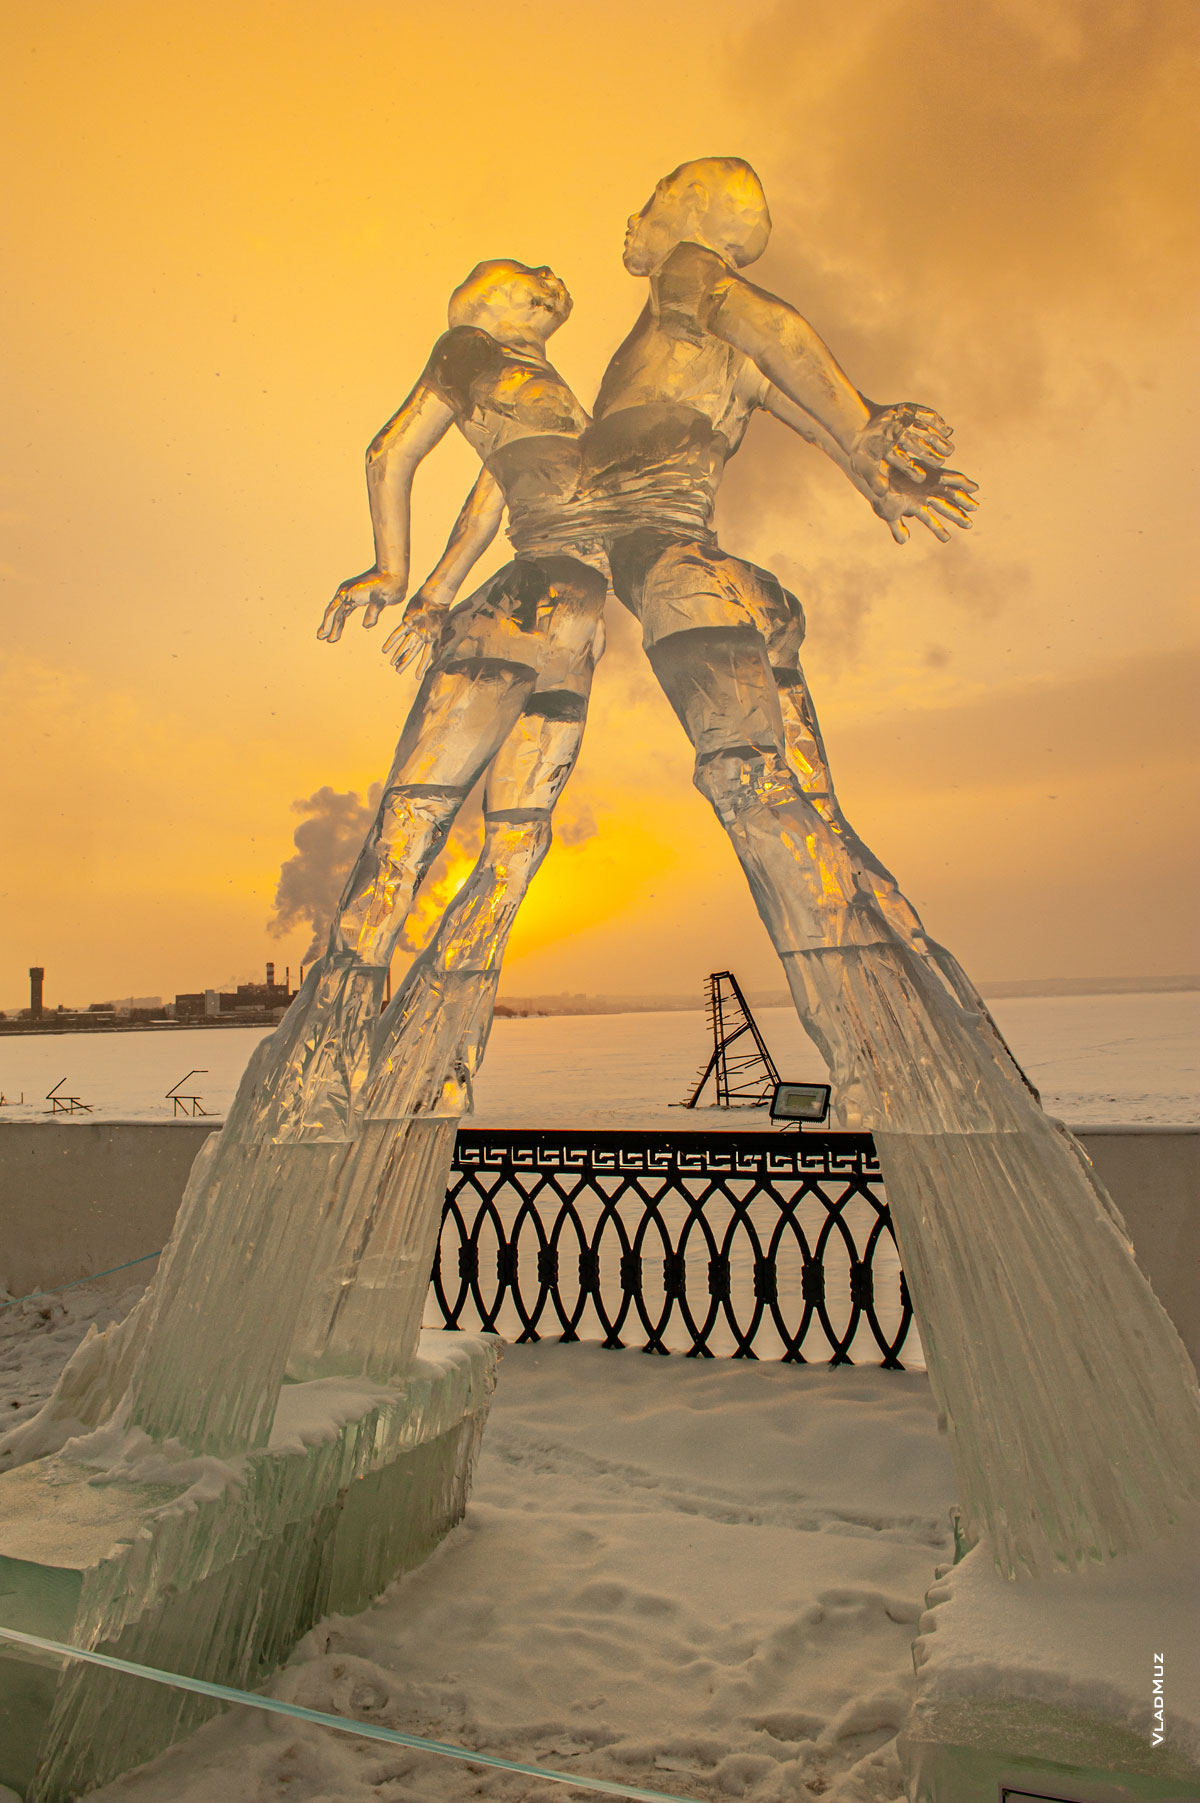 Ижевск, фестиваль «Удмуртский лед 2018»: фото ледовой скульптуры «Любовь» на фоне закатного неба